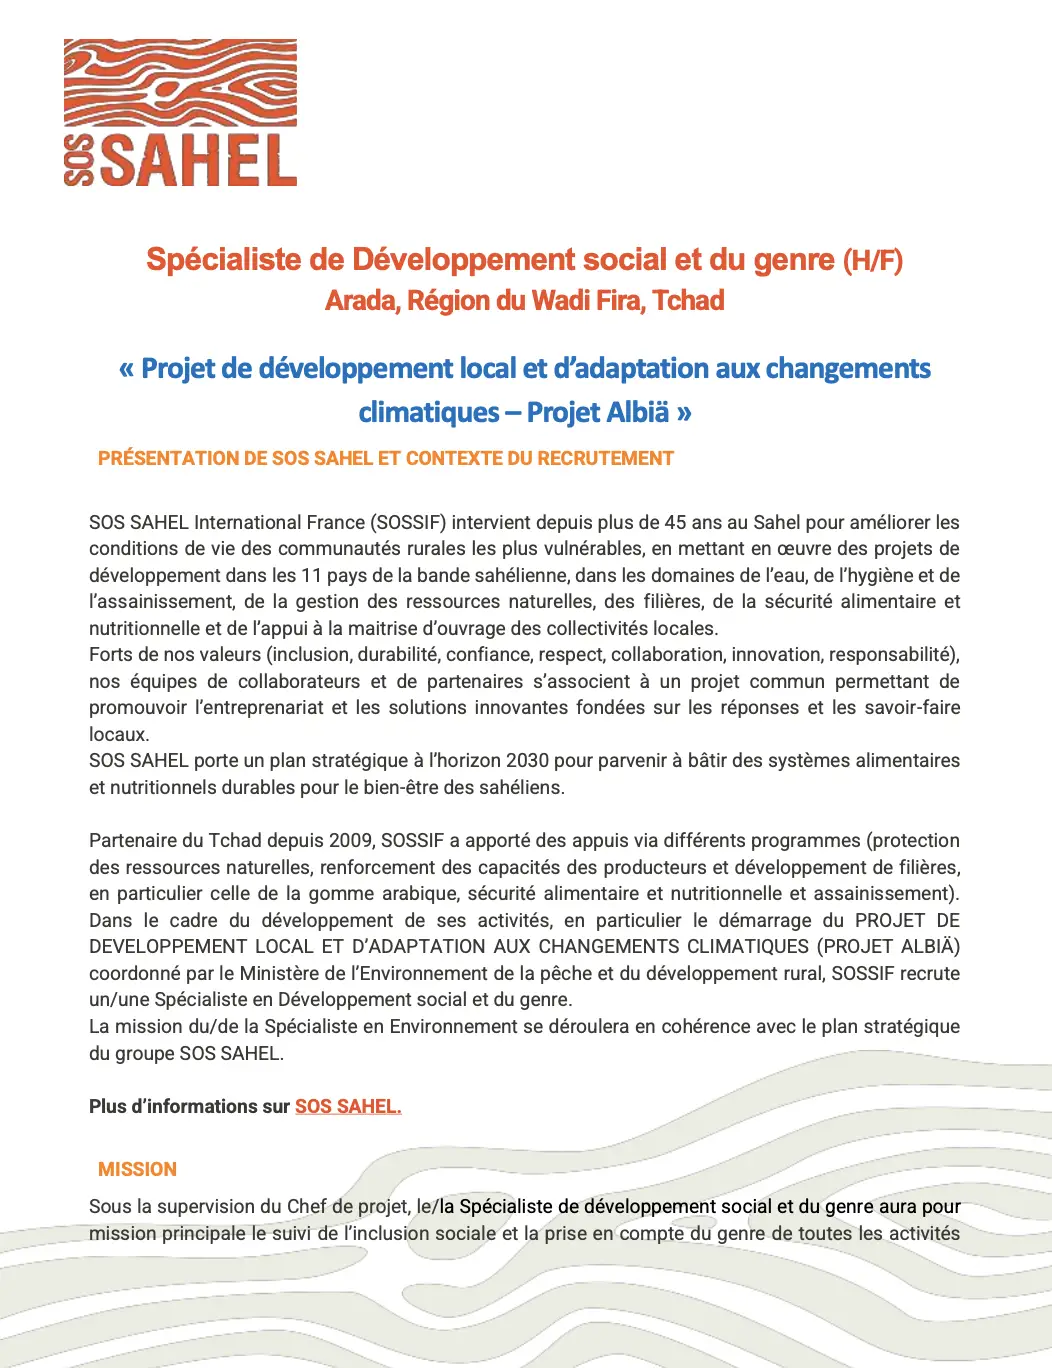 Tchad : SOS SAHEL International France (SOSSIF) recrute un(e) Spécialiste de Développement Social et du Genre (H/F) à Arada